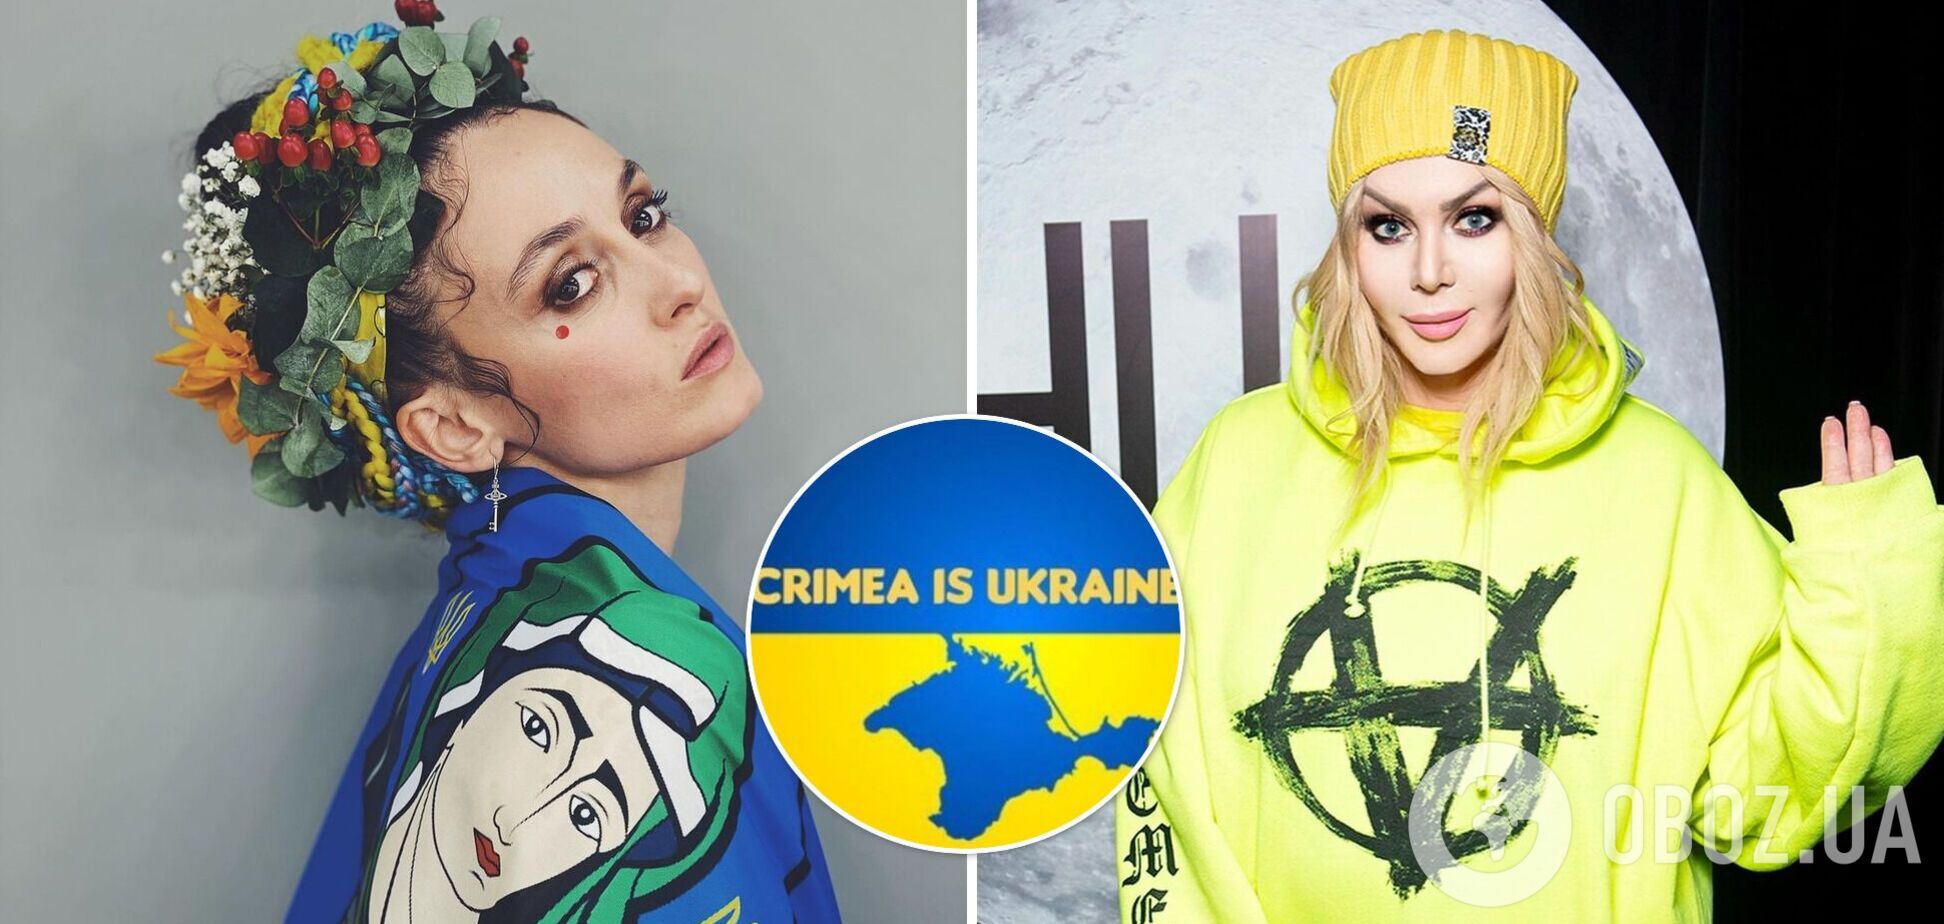 Алина Паш хотела подставить Ирину Билык, но сама 'спалилась' на лжи о поездке в Крым. Фотодоказательства